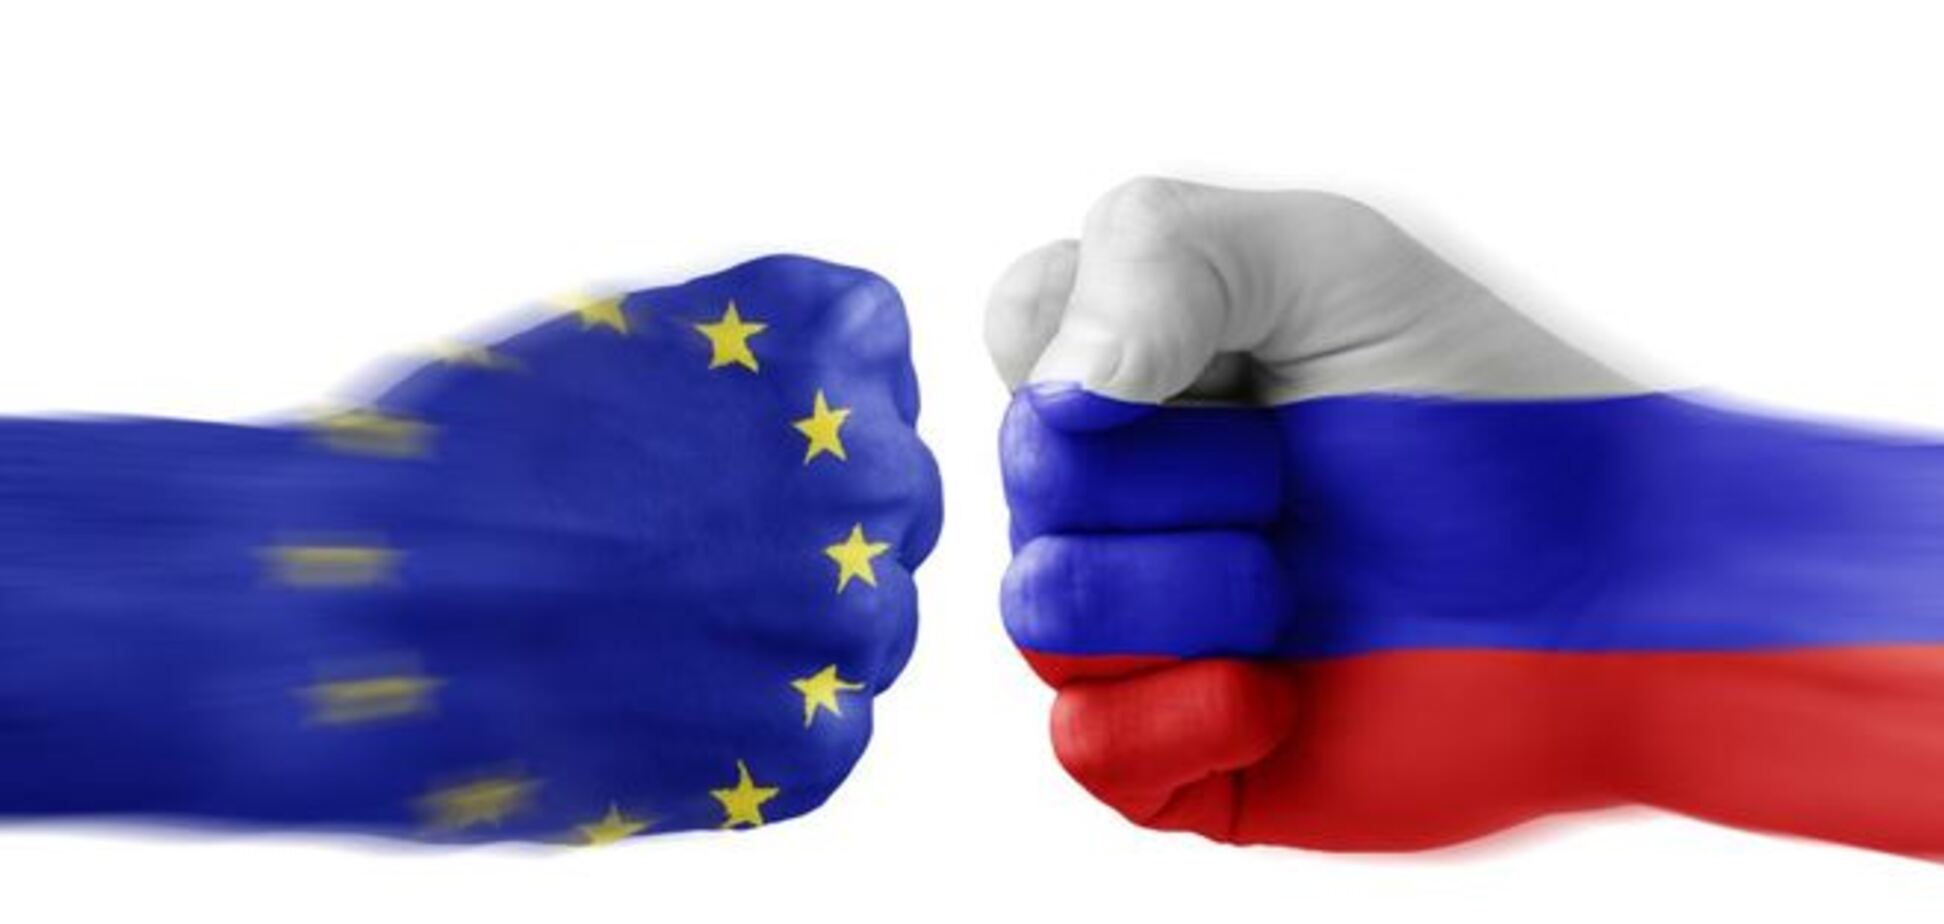 ЕС введет новые санкции против России в случае наступления боевиков - СМИ